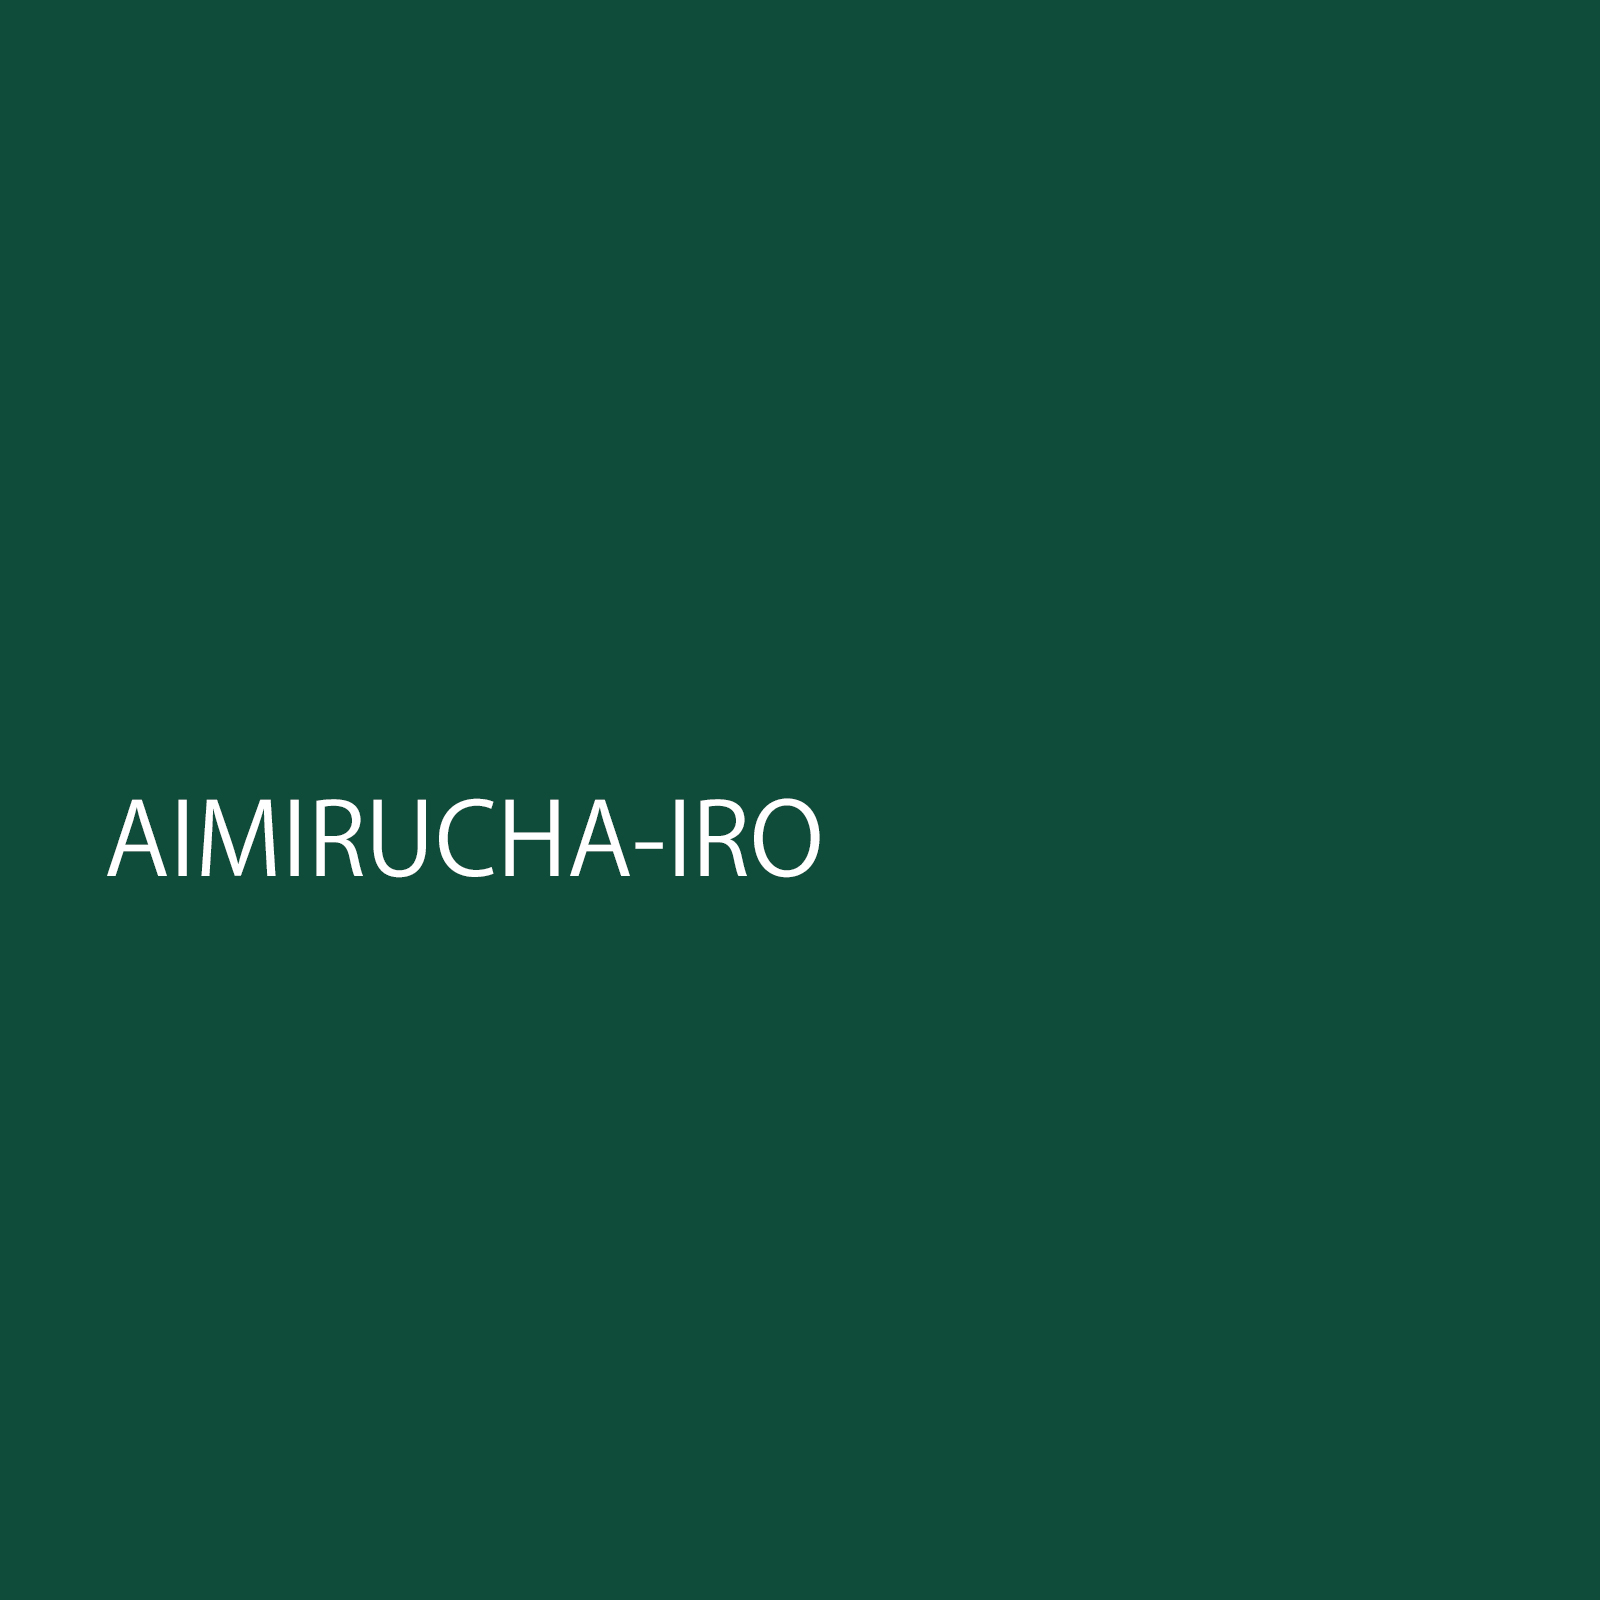 aimiruchairo.jpg